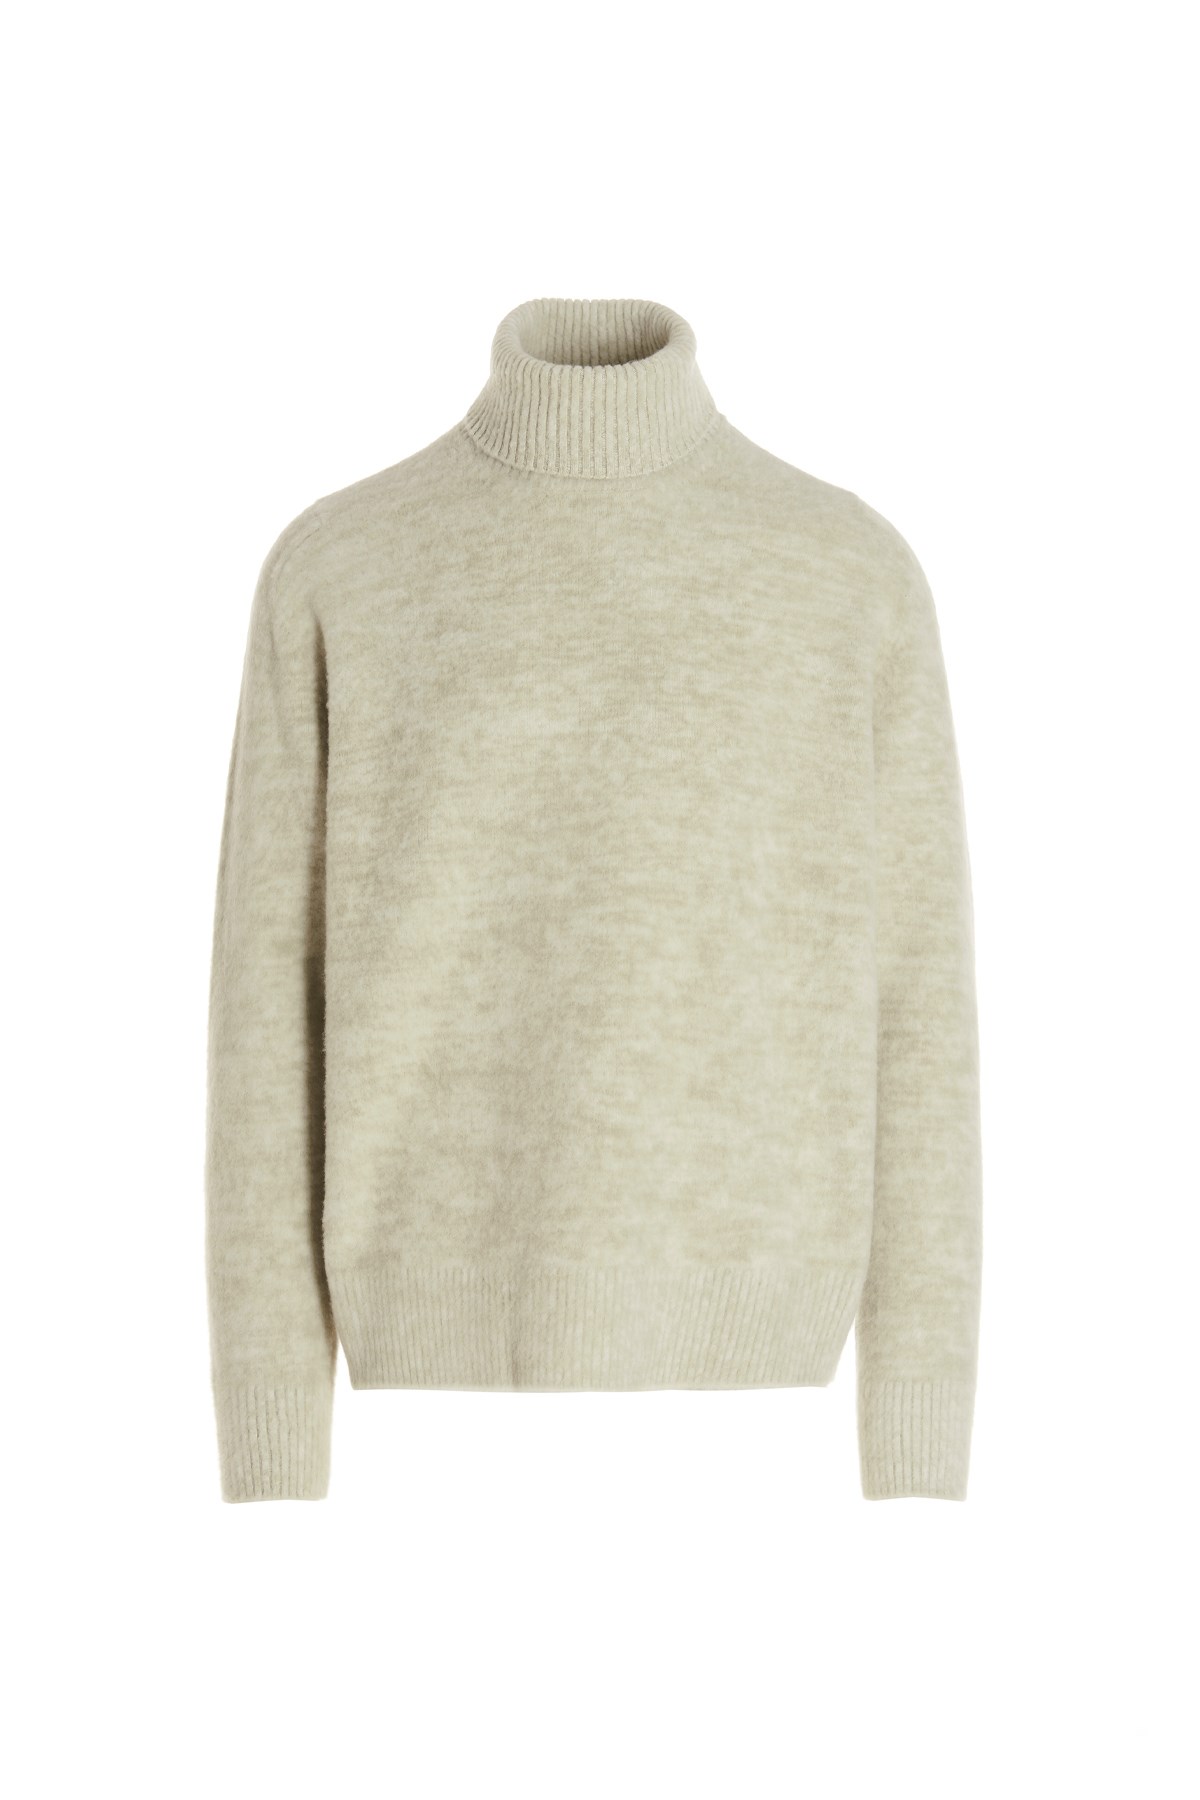 OAMC 'Whistler' Sweater